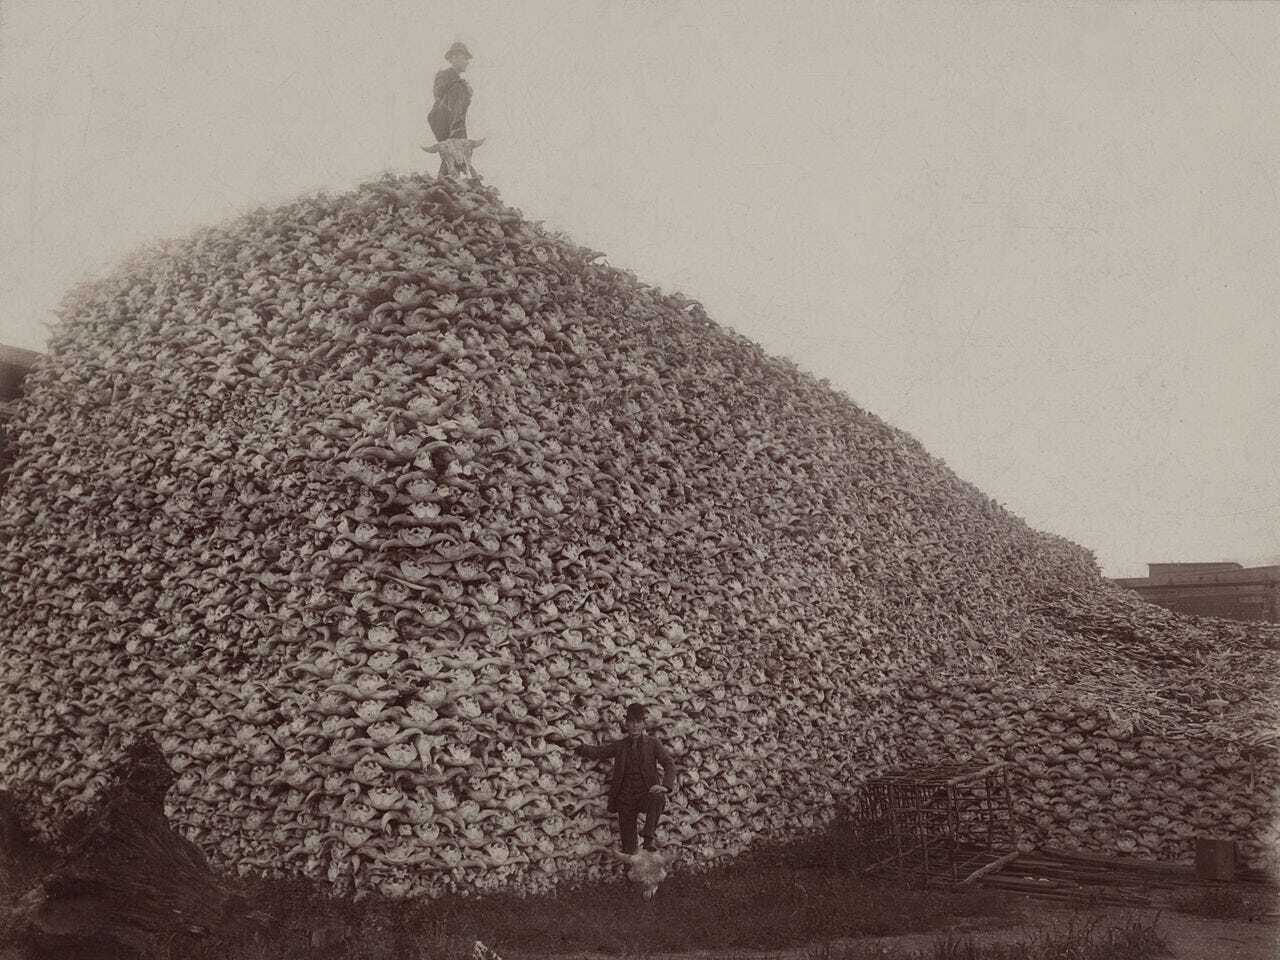 buffalo skulls